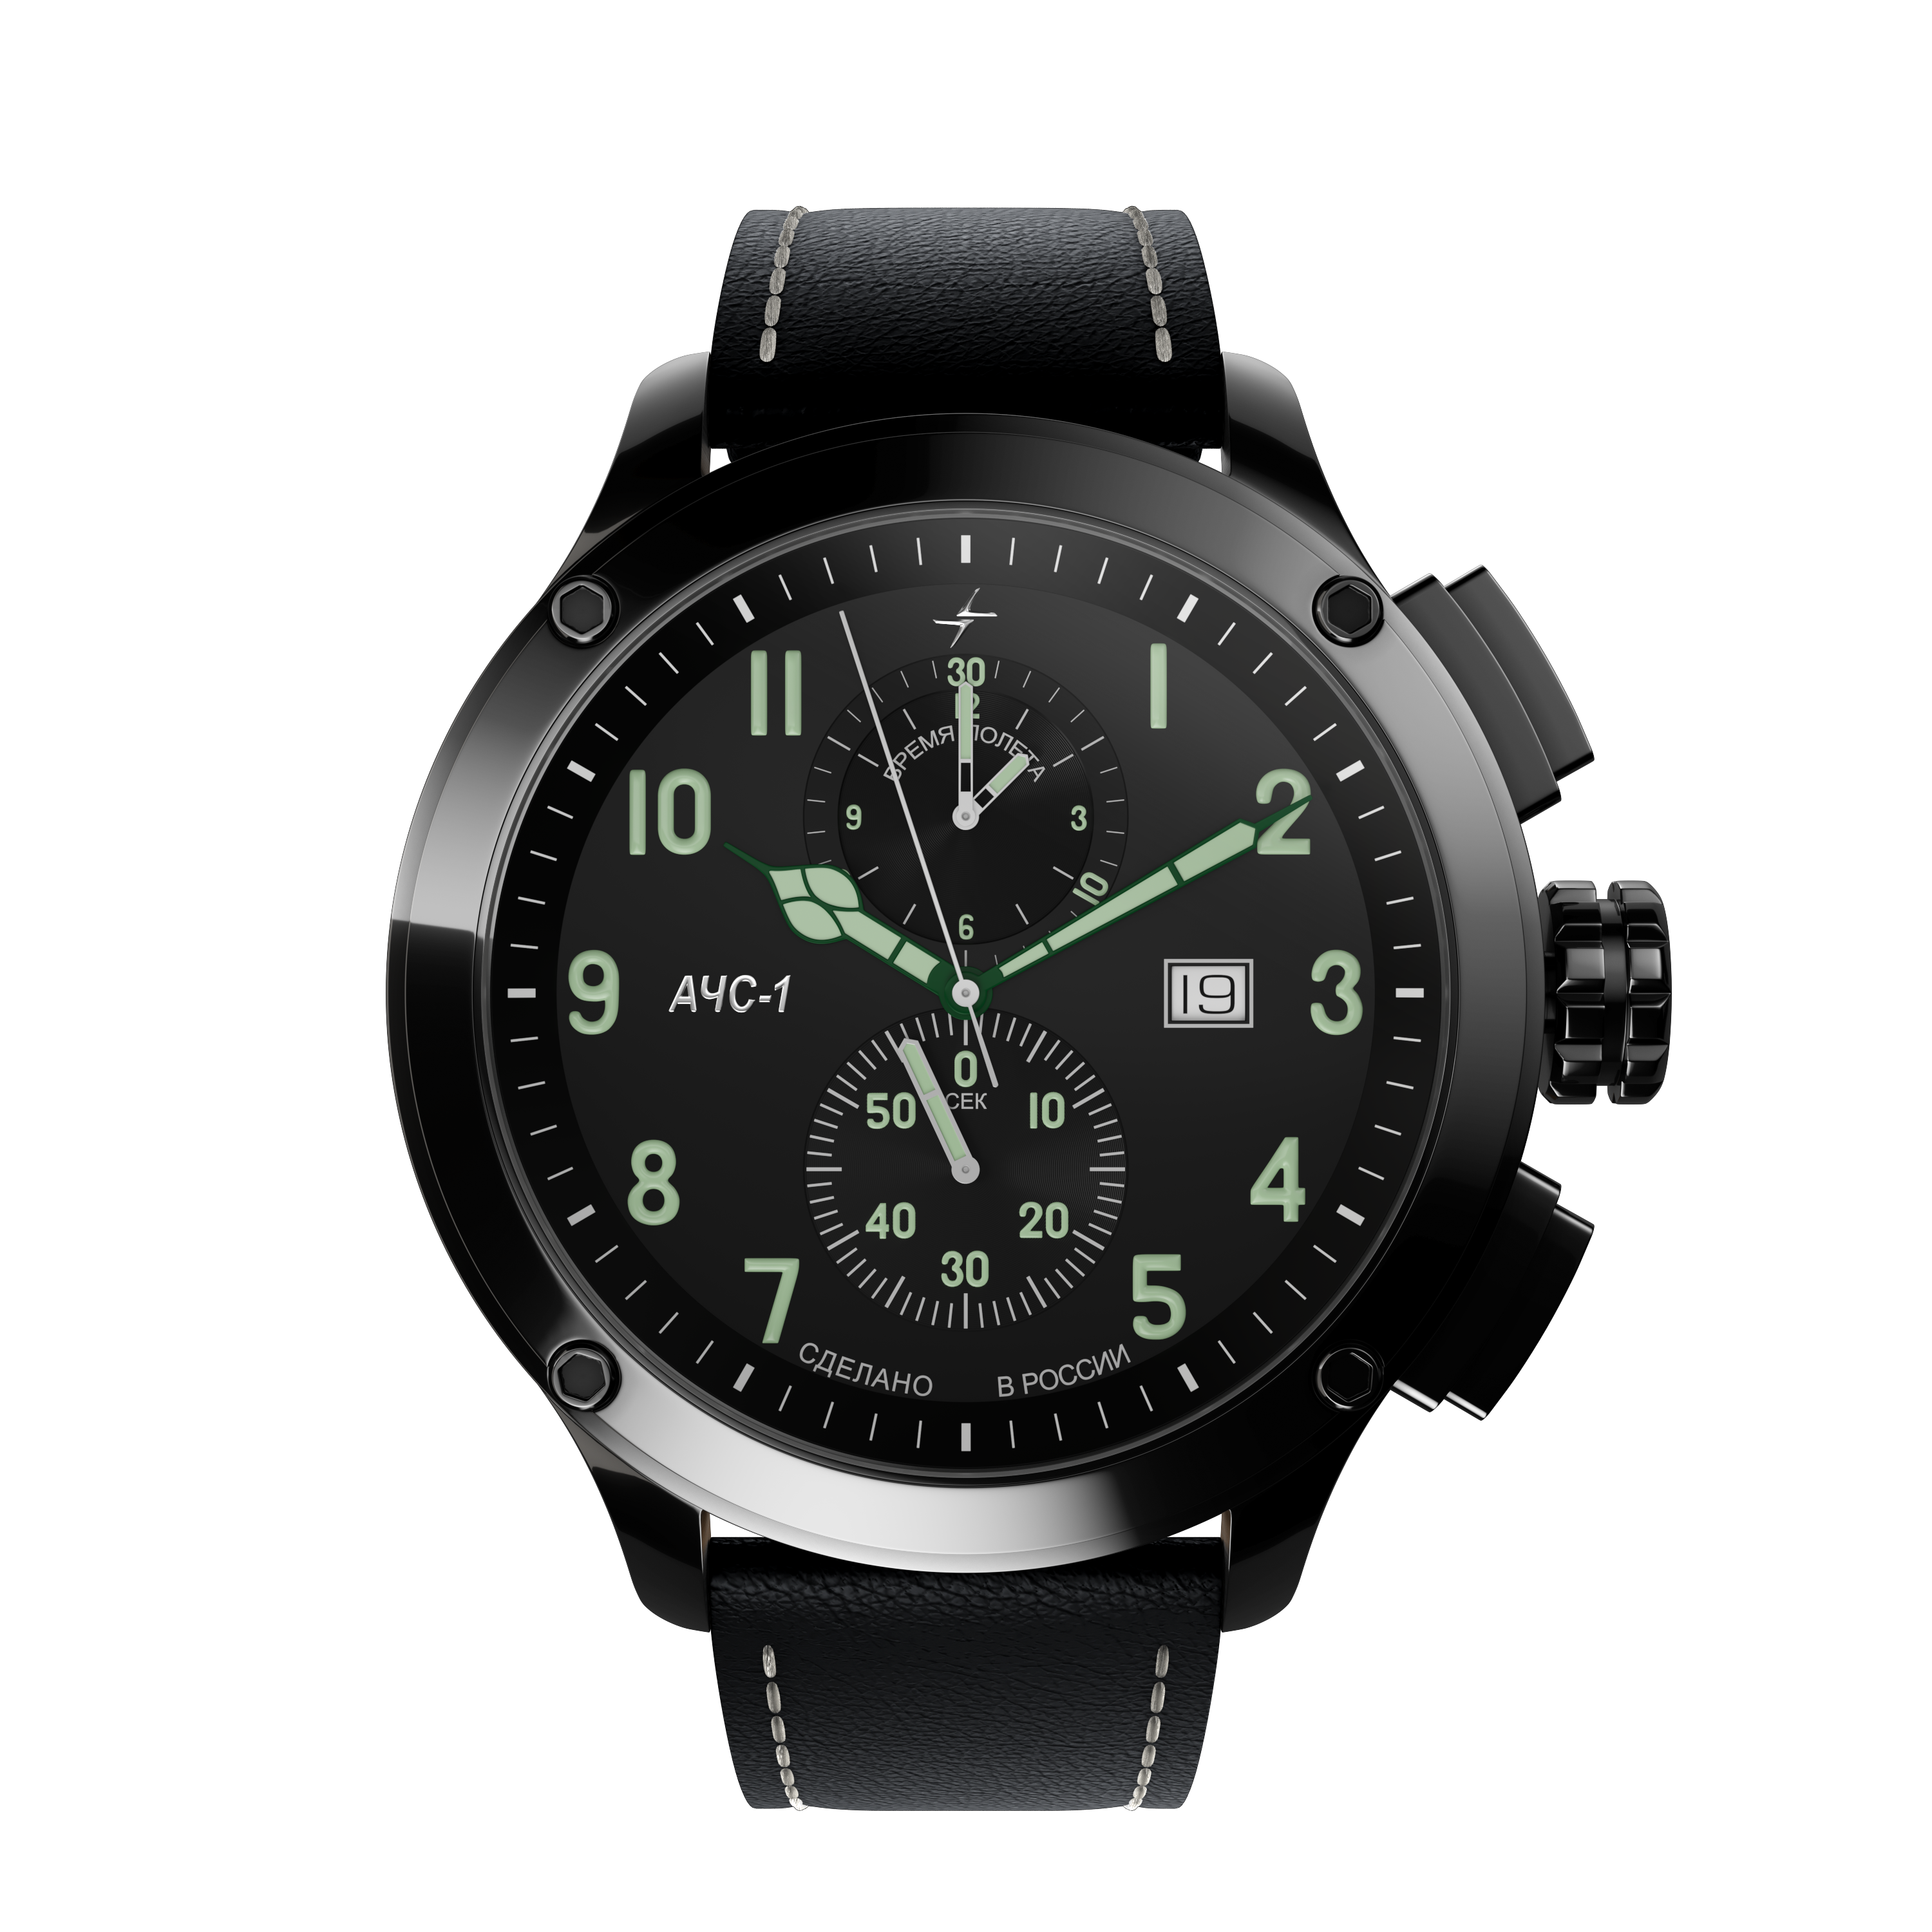 Фото часов Мужские часы Молния АЧС-1 3.0 Black Матовый 0010104 - 3.0